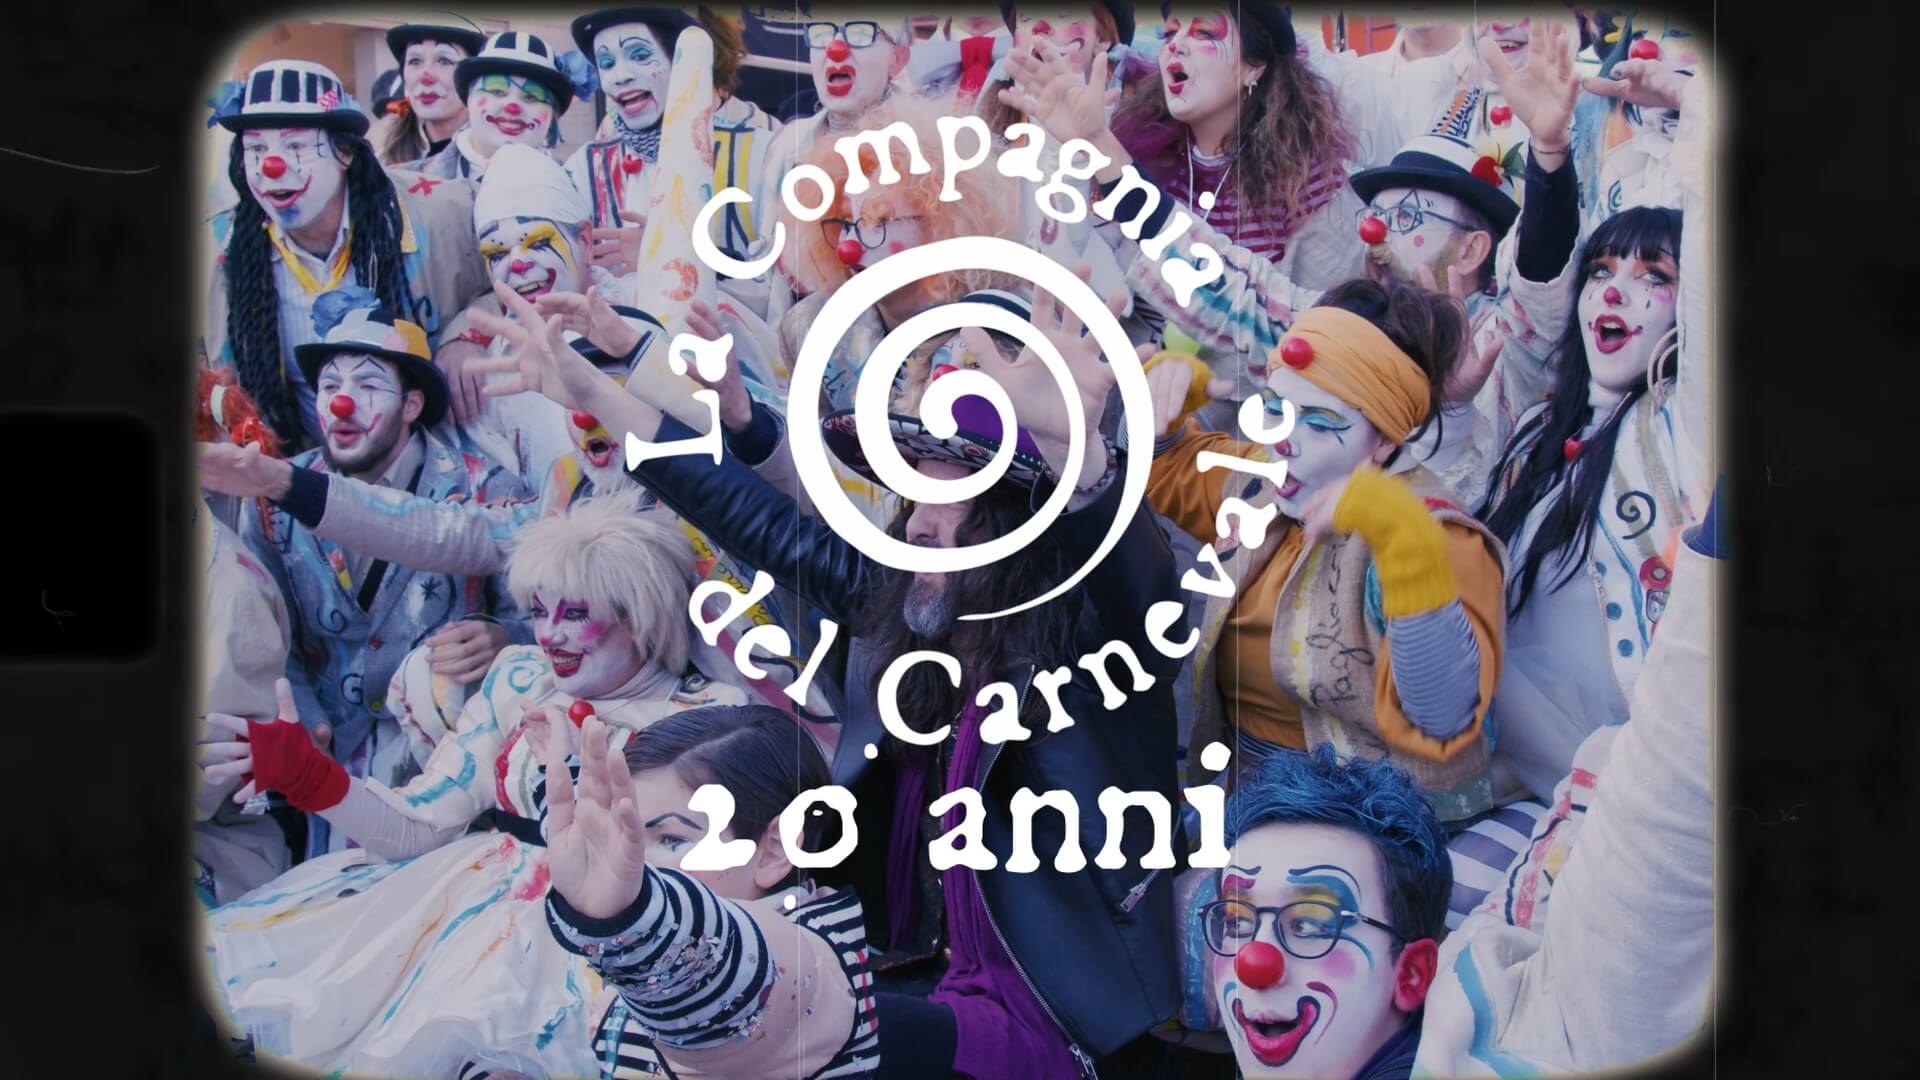 “Viva la Compagnia”: Una canzone della compagnia del Carnevale e Luca Bassanese per festeggiare un compleanno speciale.